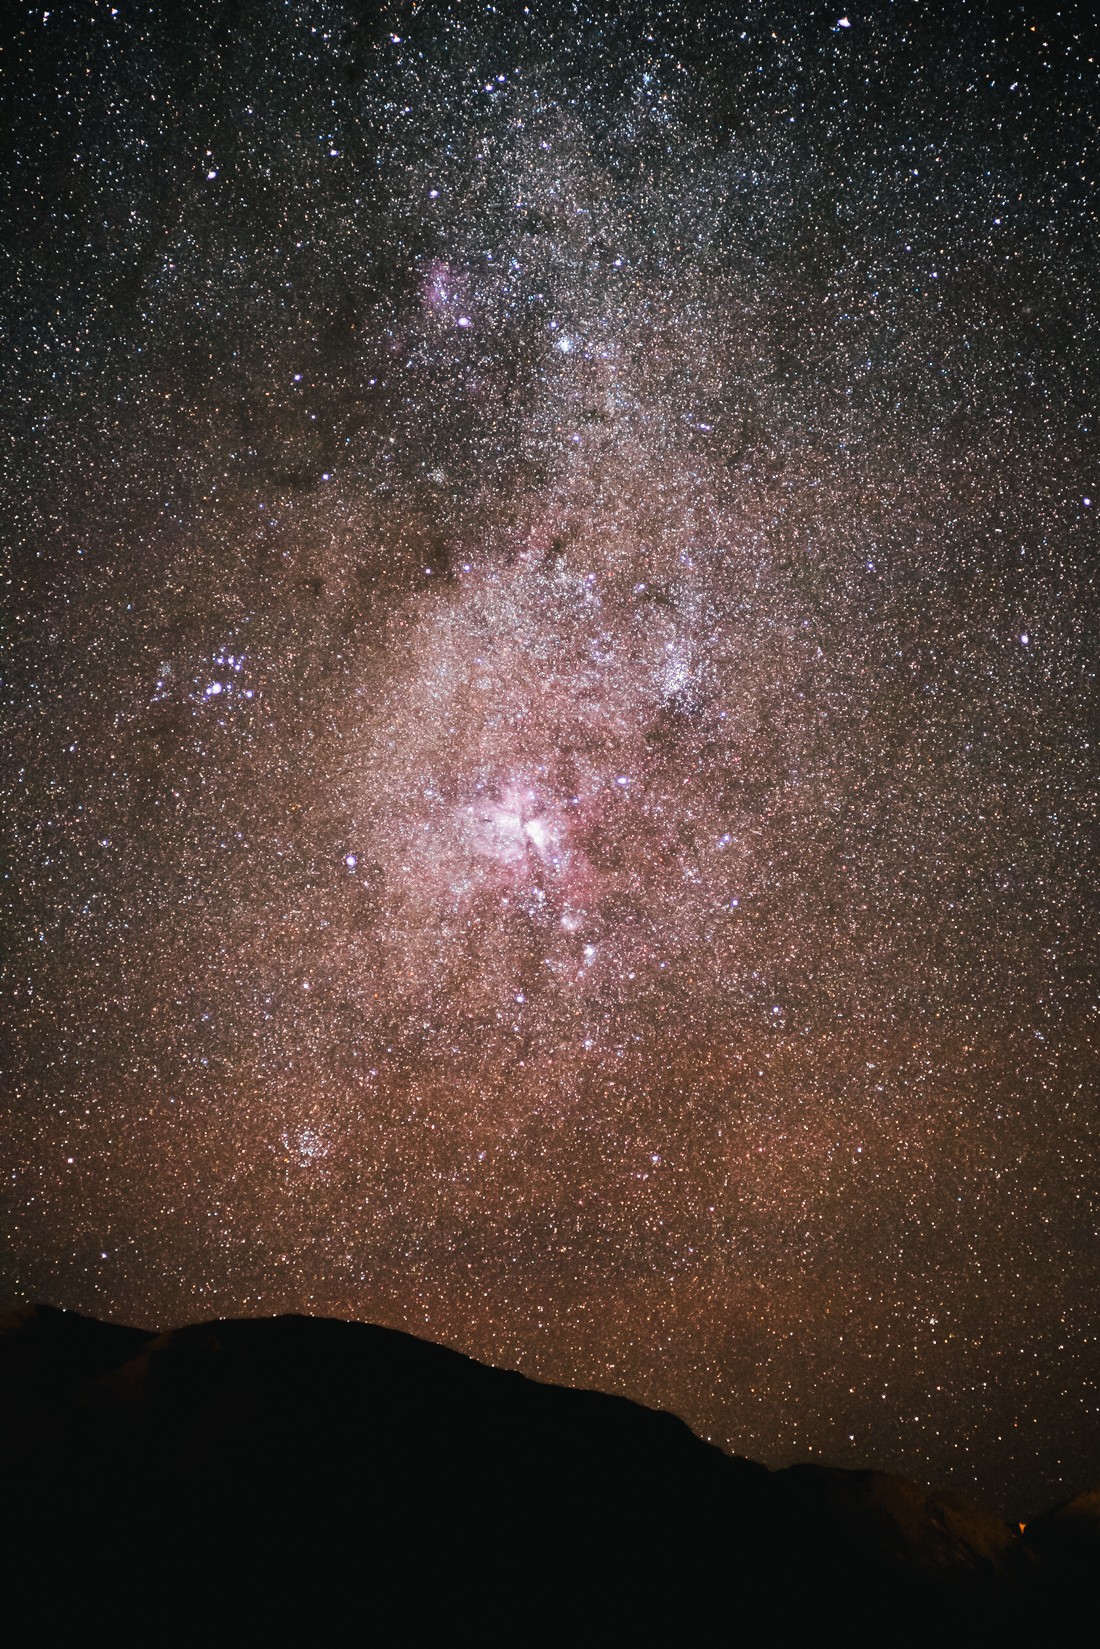 005 sternenhimmel milchstrasse atacama wueste san pedro de atacama - Chile - Sternenhimmel in der Atacama Wüste